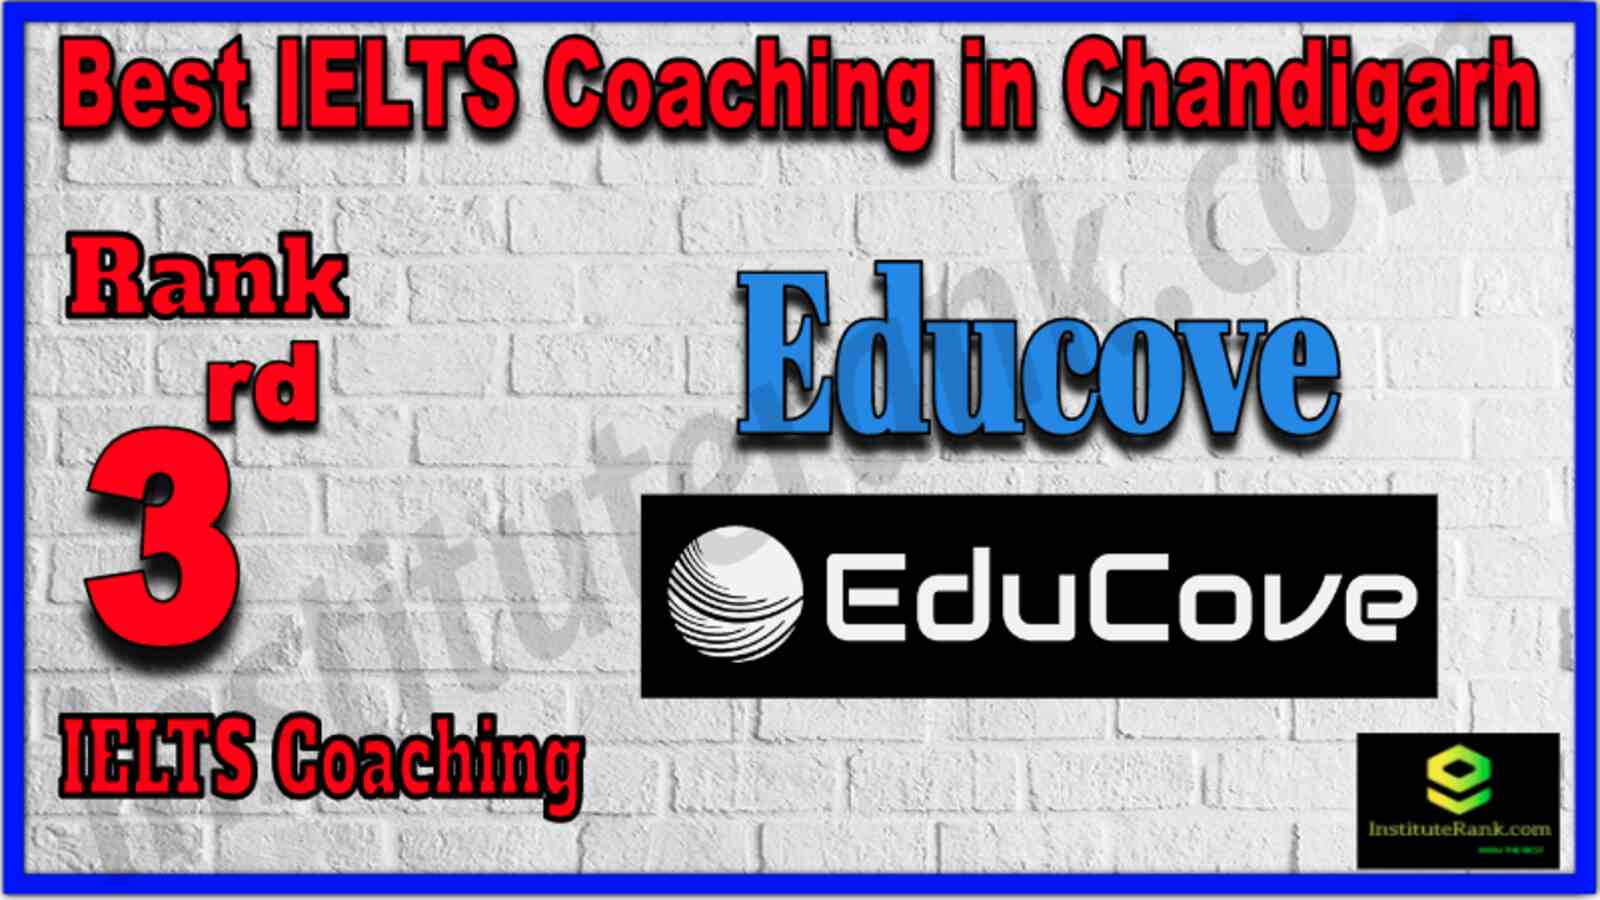 3rd Best IELTS Coaching in Chandigarh